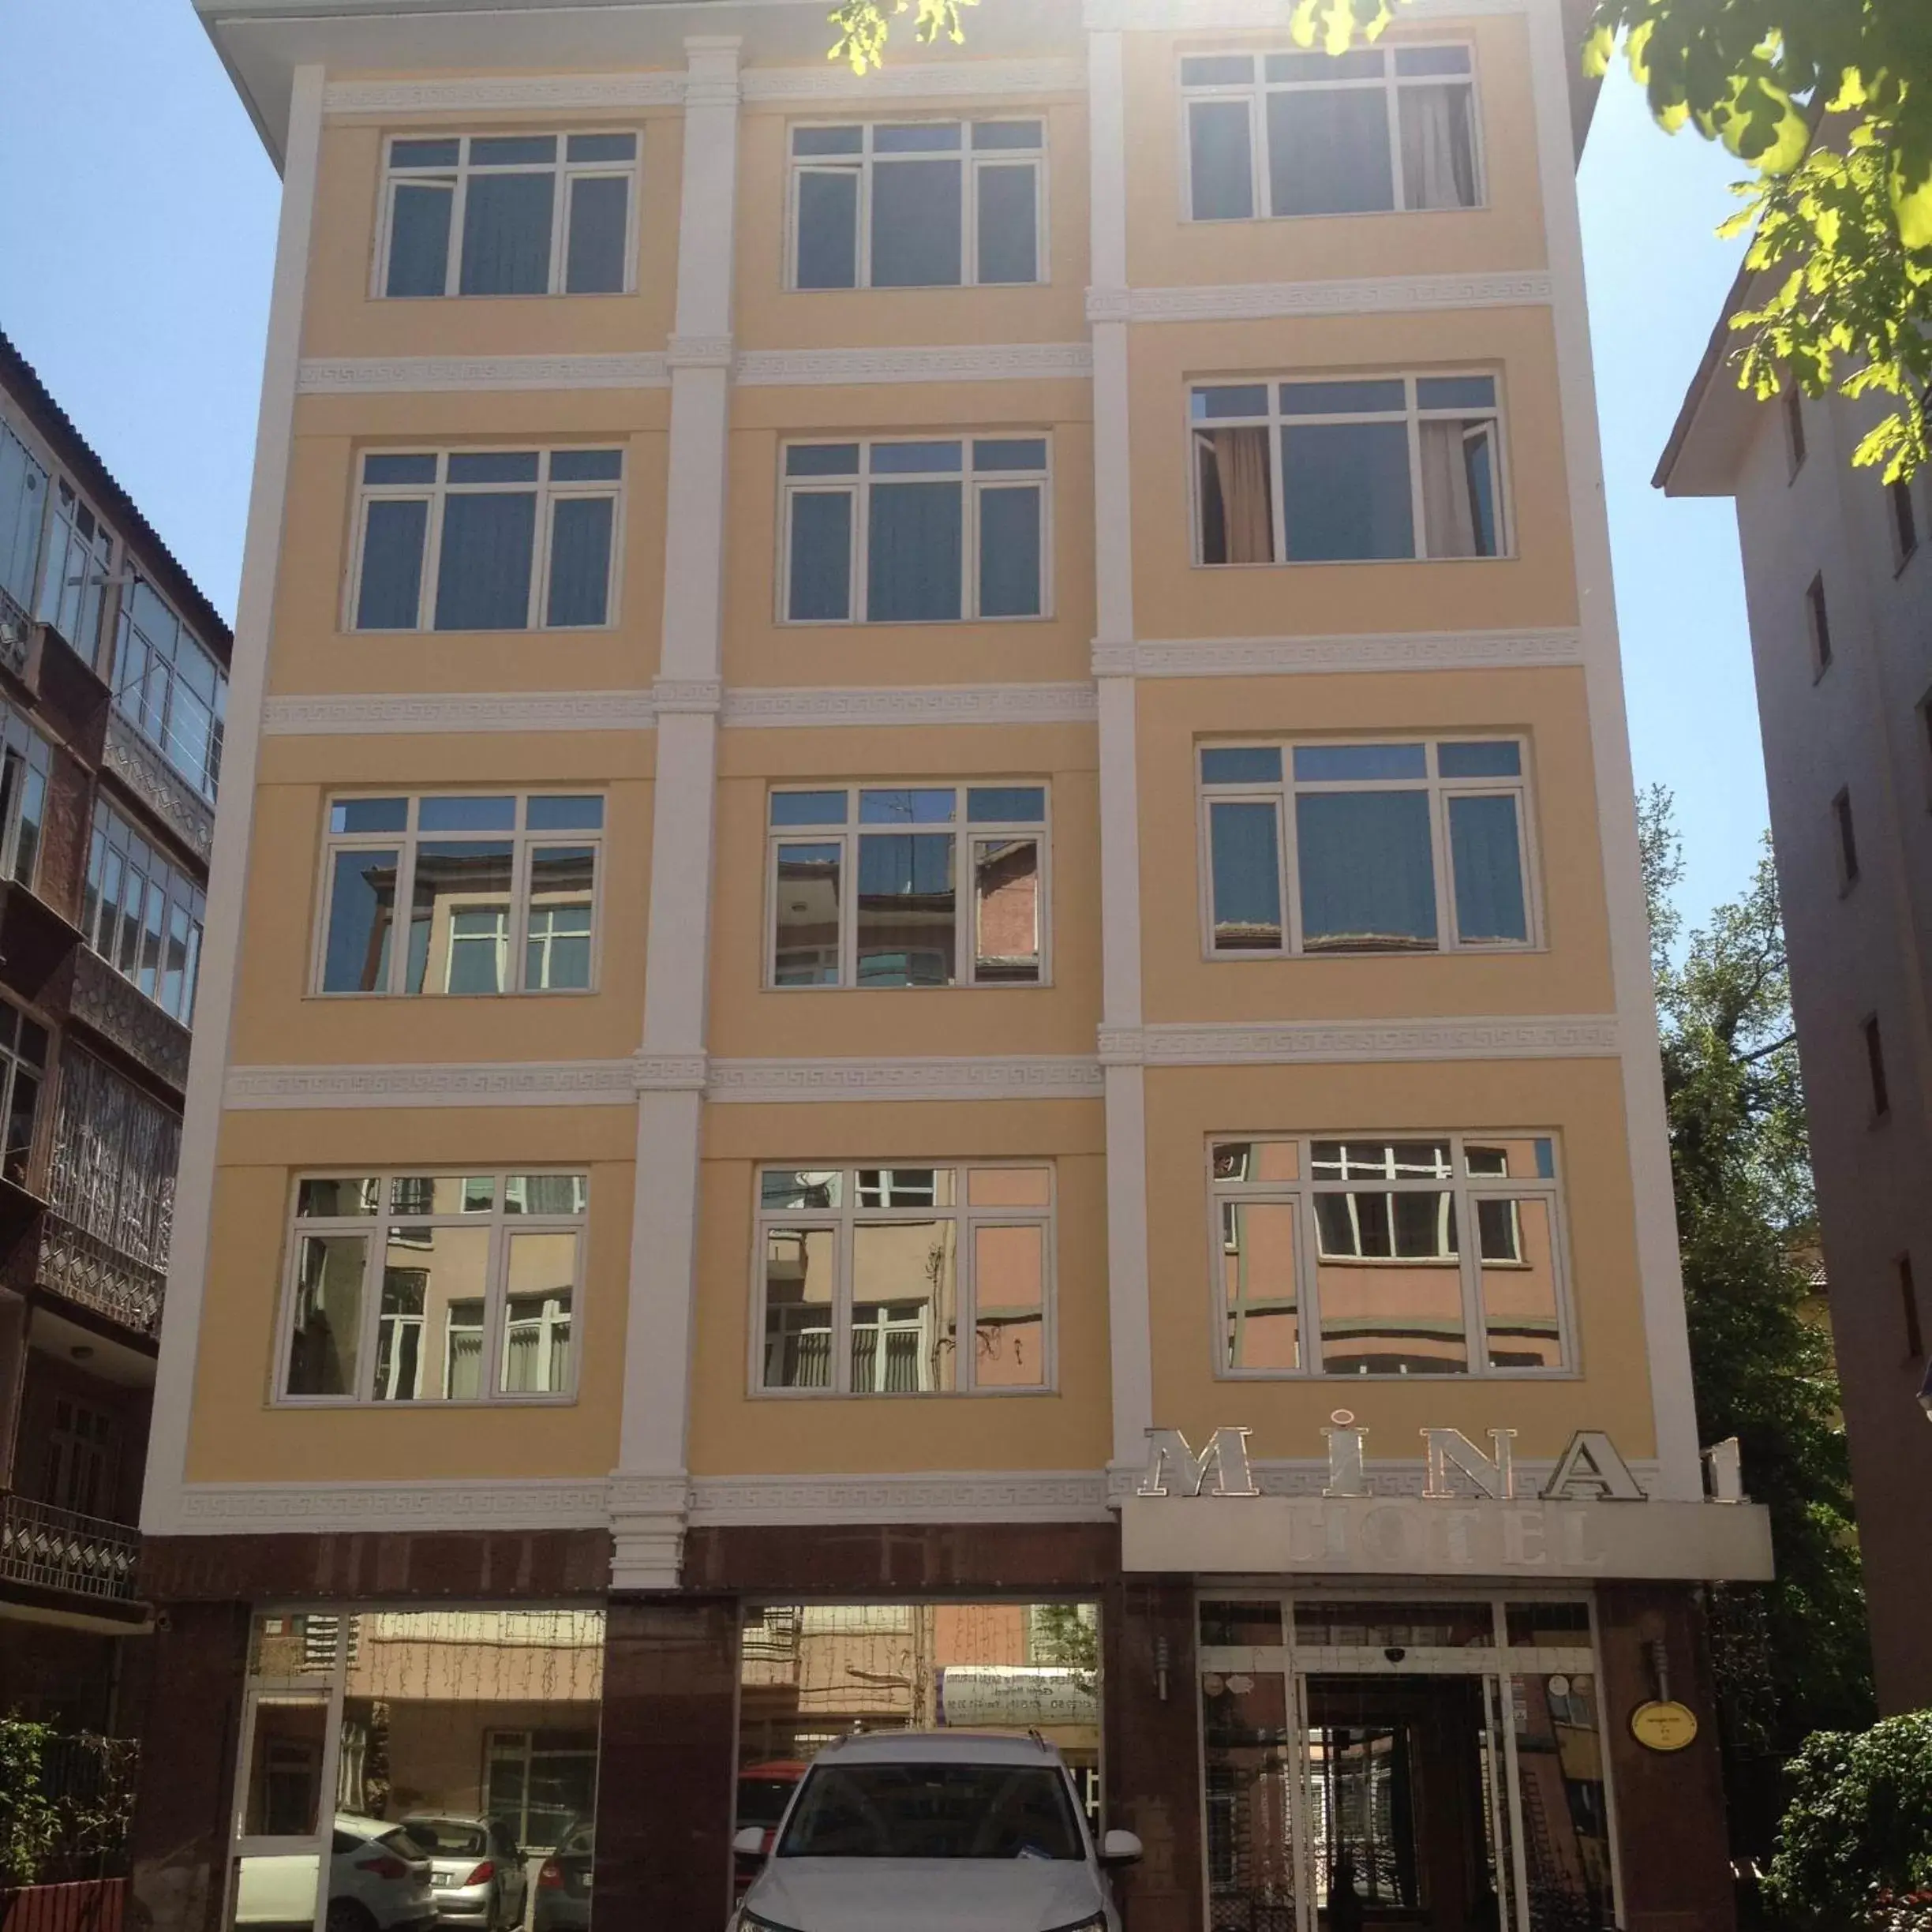 Facade/entrance, Property Building in Mina 1 Hotel